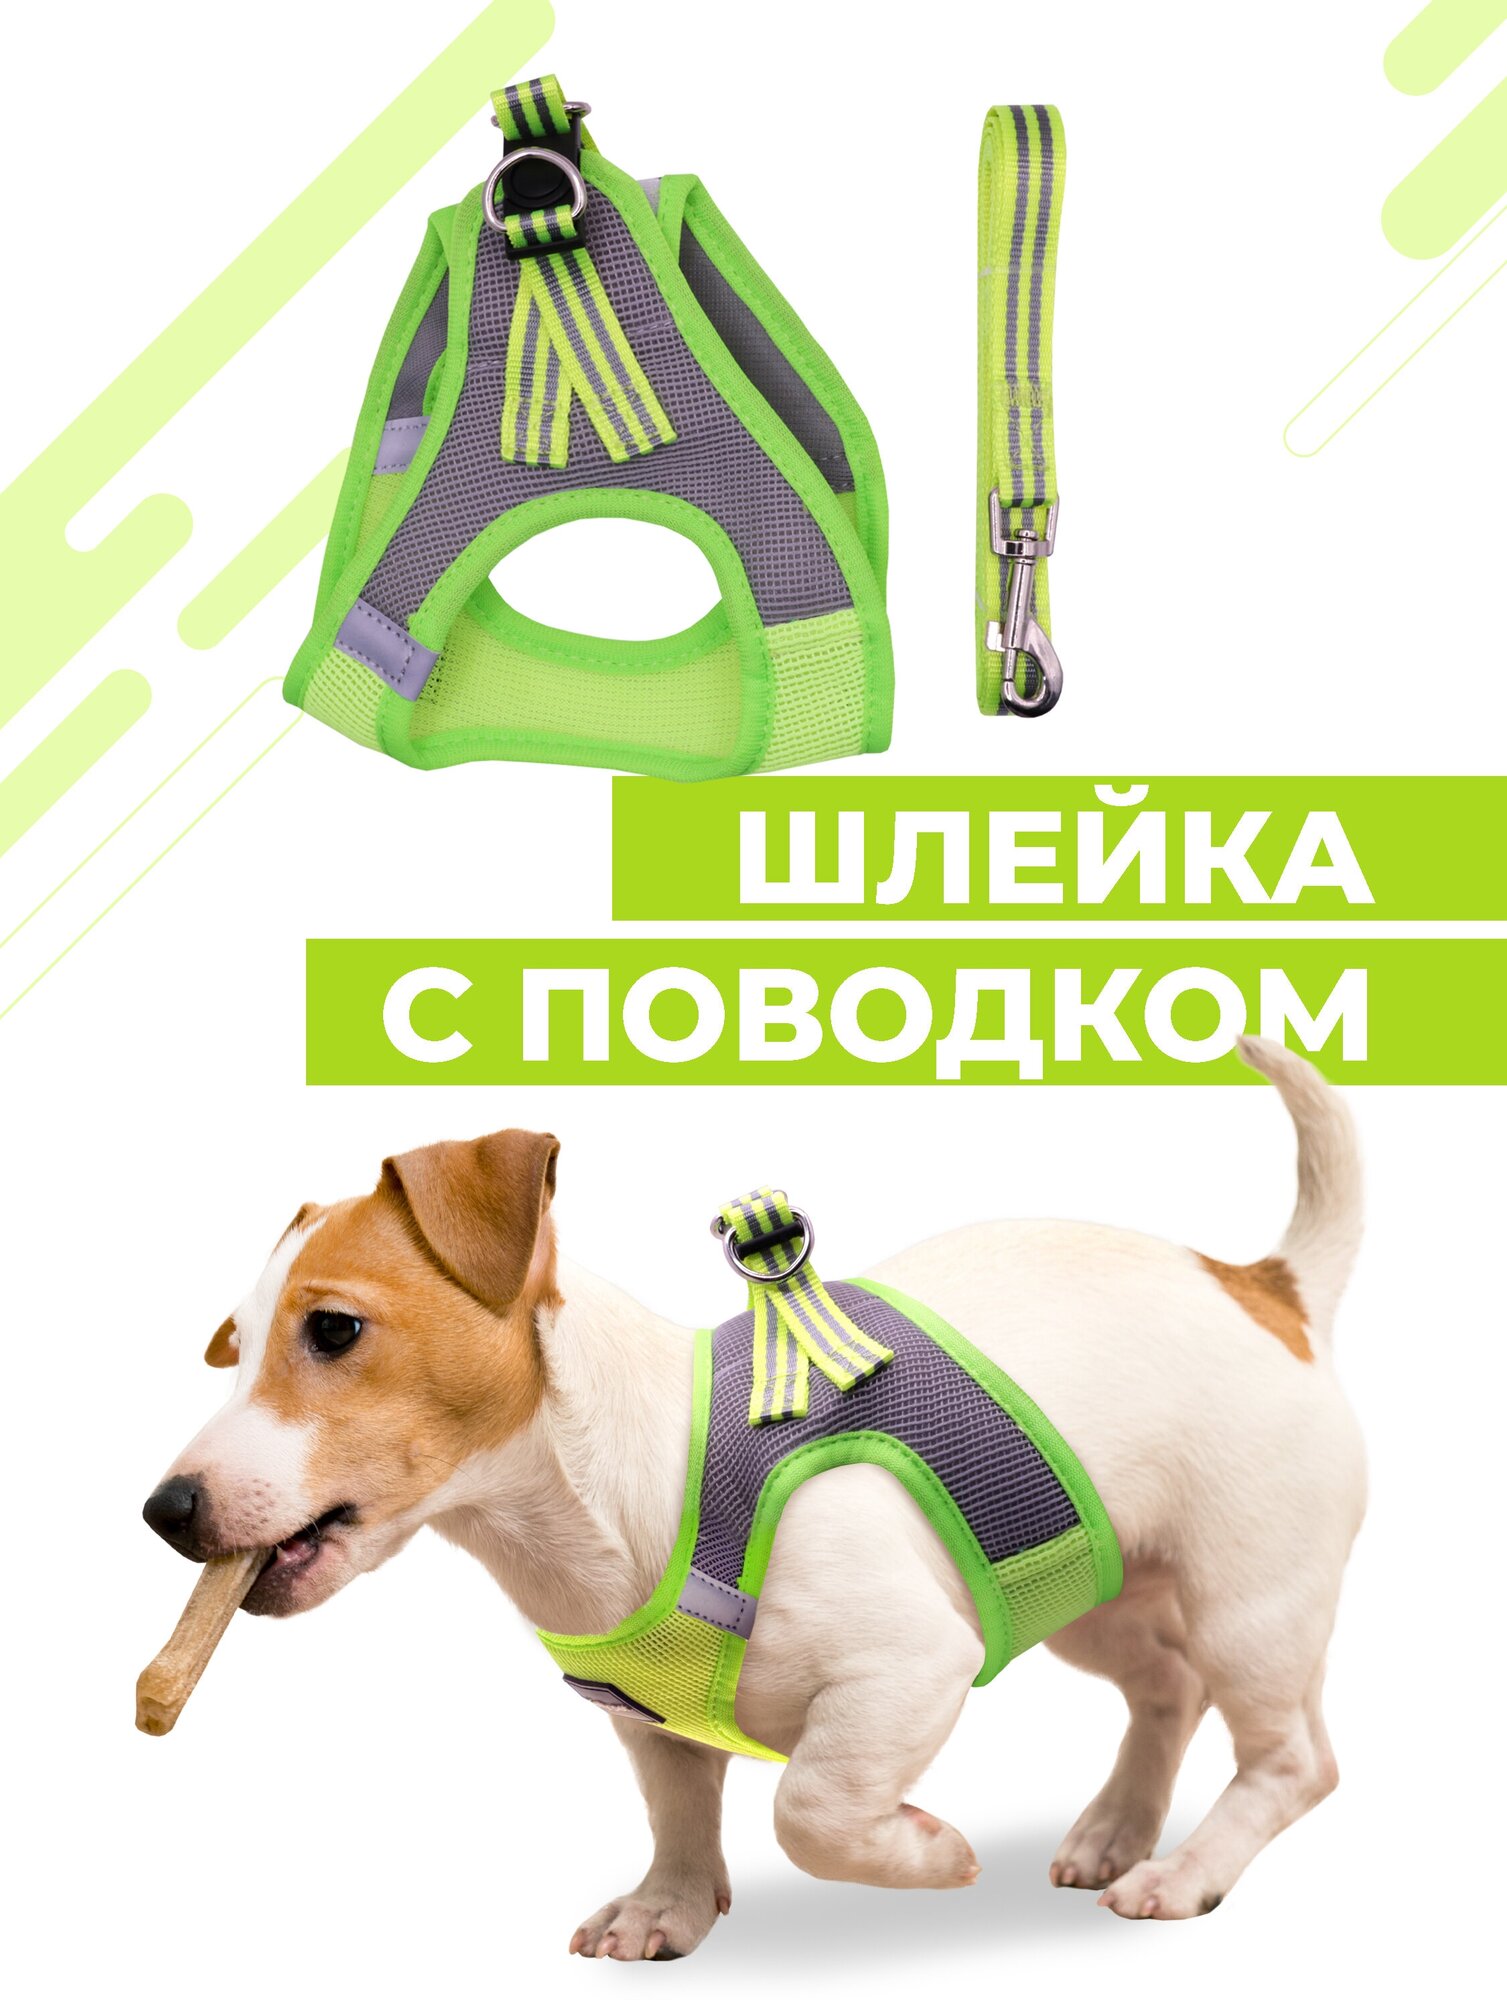 Шлейка для собак и кошек Boomshakalaka, со светоотражающими элементами, с поводком 120 см, размер XXXS(обхват 24-28 см), вес до 1 кг, цвет желто-зеленый